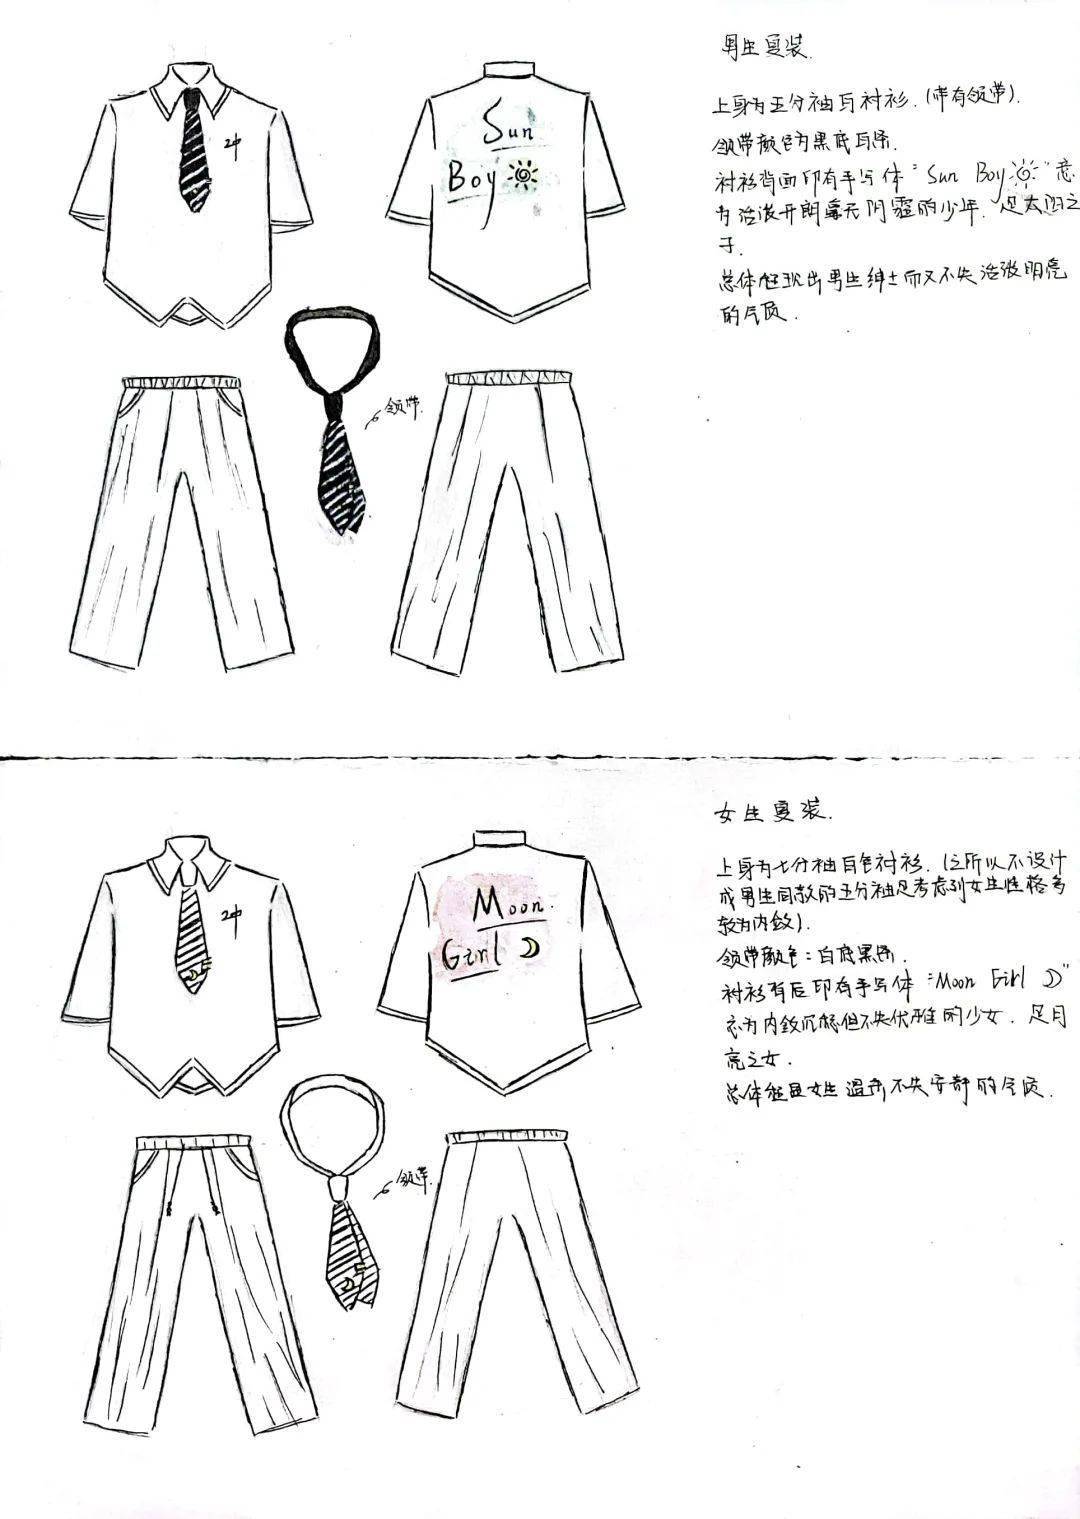 校服设计手稿图 步骤图片